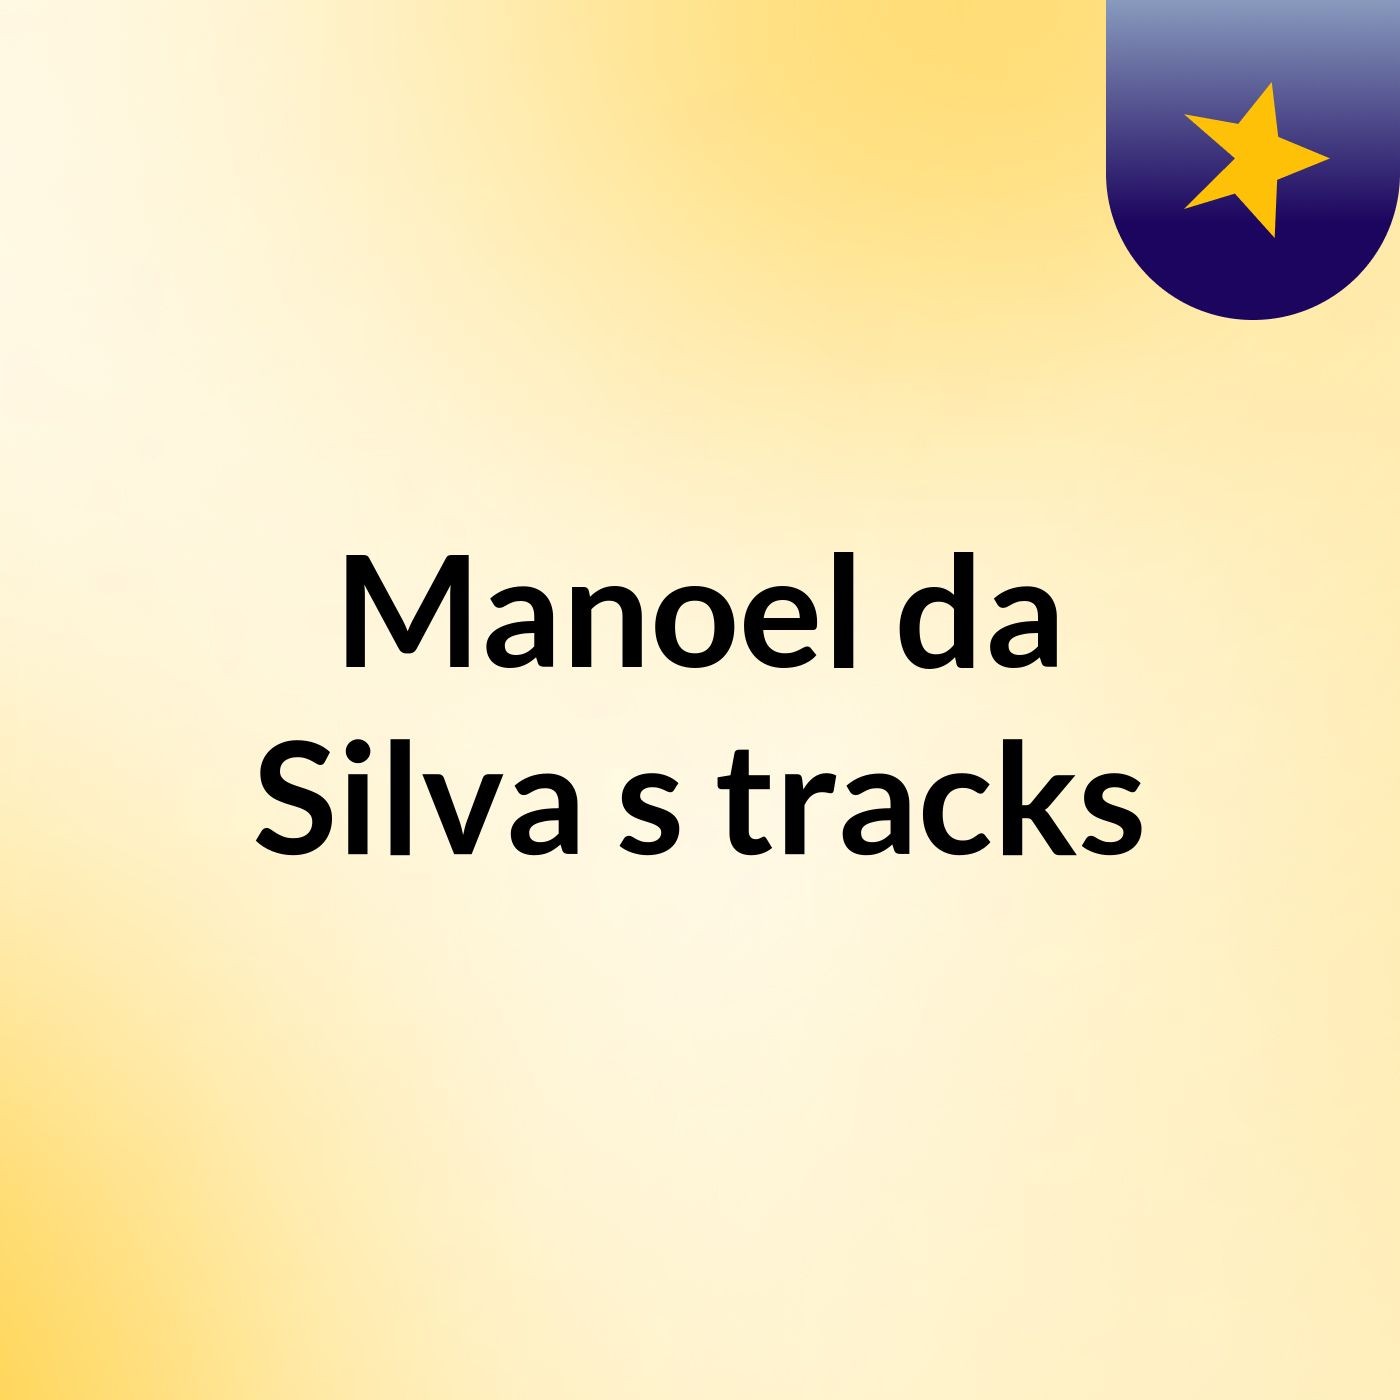 Manoel da Silva's tracks